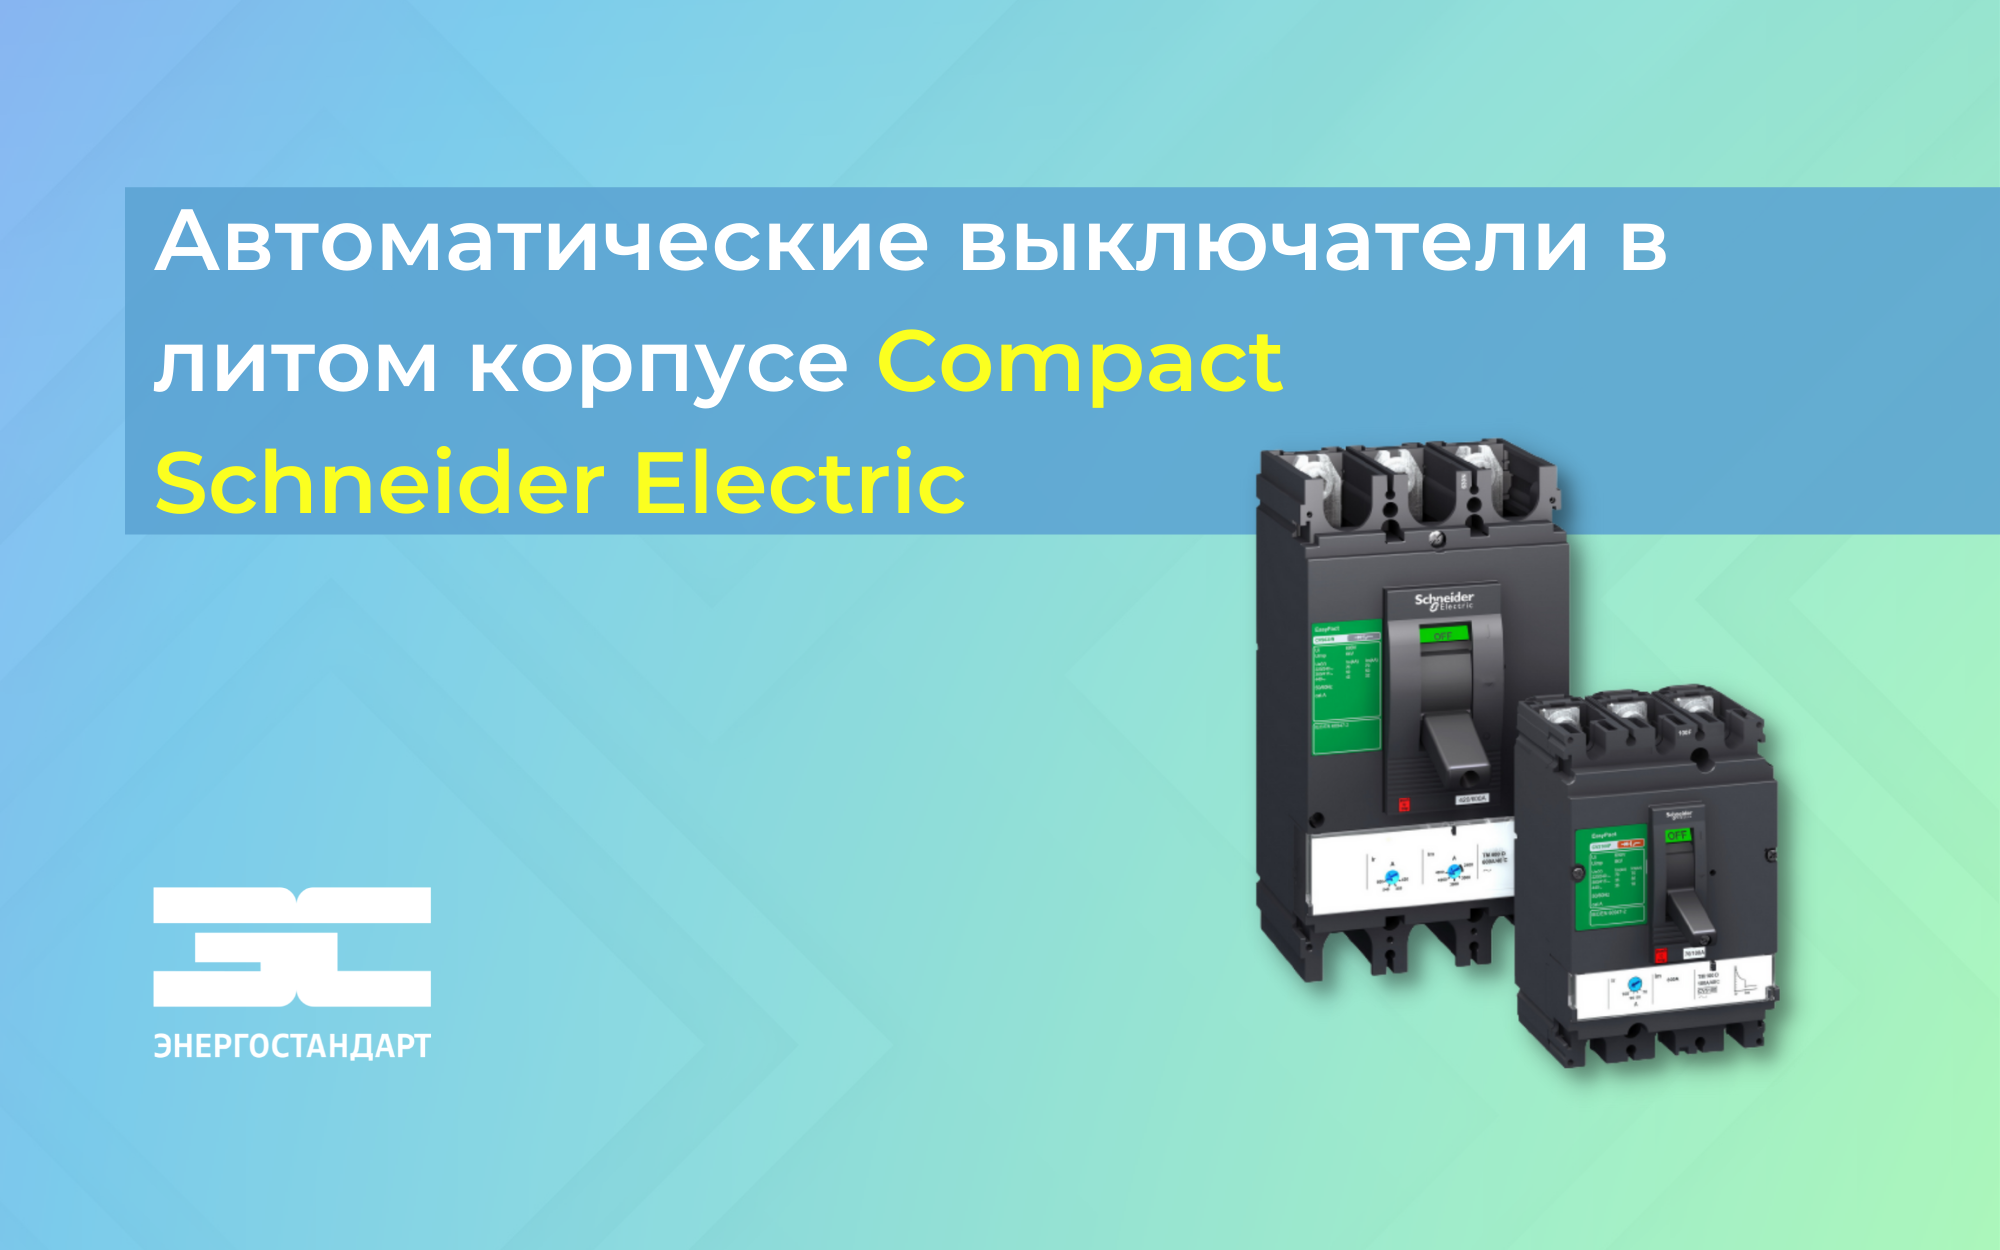 Schneider Electric представляет новое поколение автоматических выключателей в литом корпусе ComPacT<